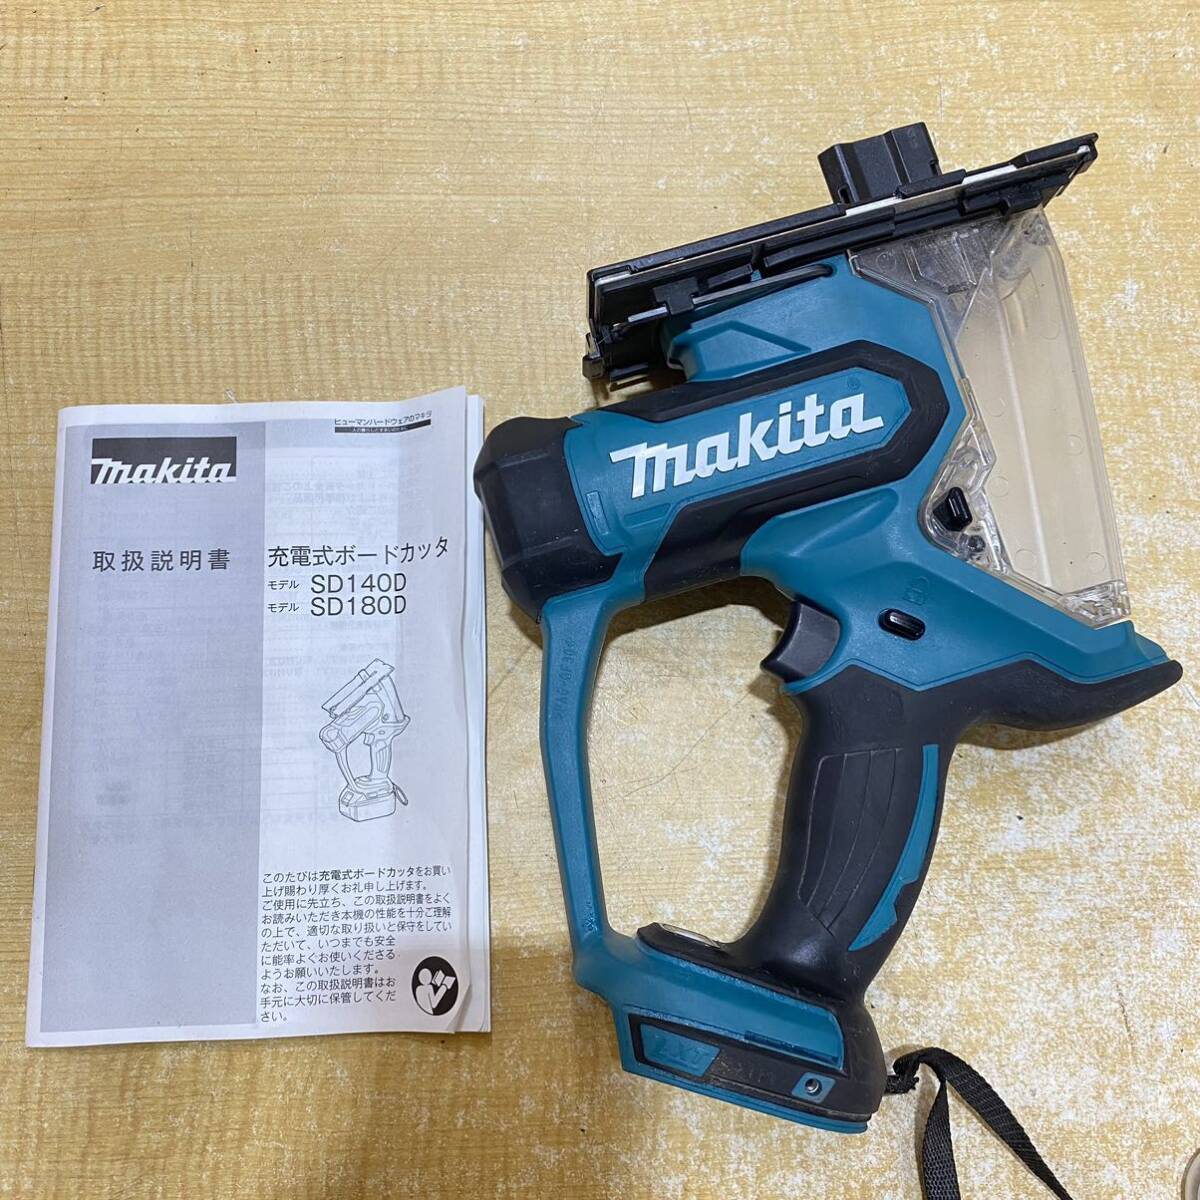 A♪ makita マキタ 18V 充電式ボードカッター SD180D 本体 コードレス ボード用切断機 角穴カッター 動作確認済み 未使用ブレード付きの画像1